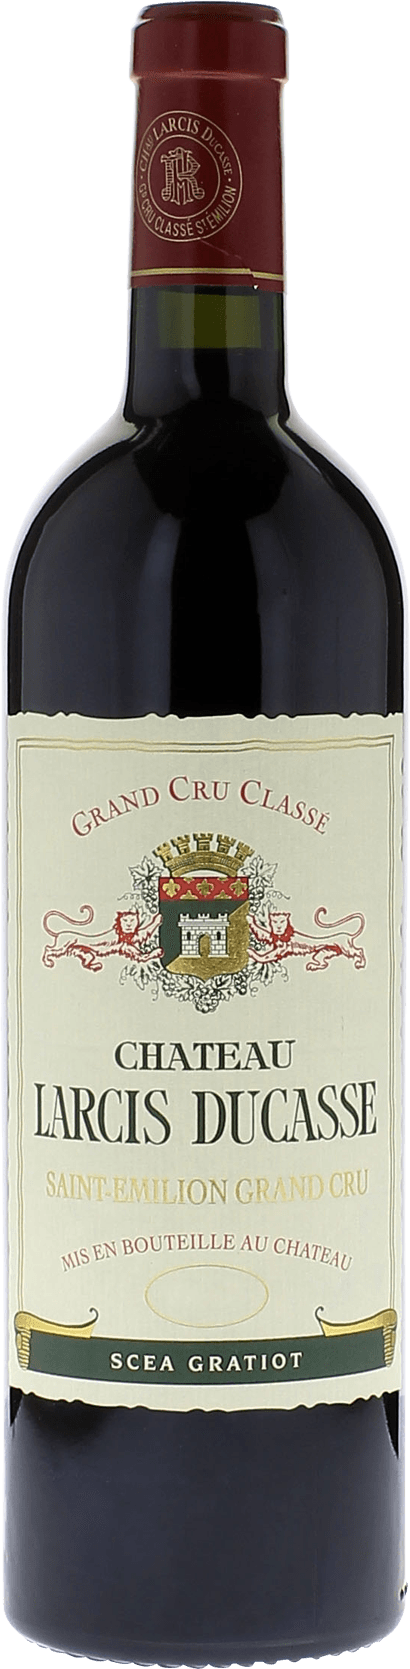 Larcis ducasse 1999 Grand cru class Saint-Emilion, Bordeaux rouge